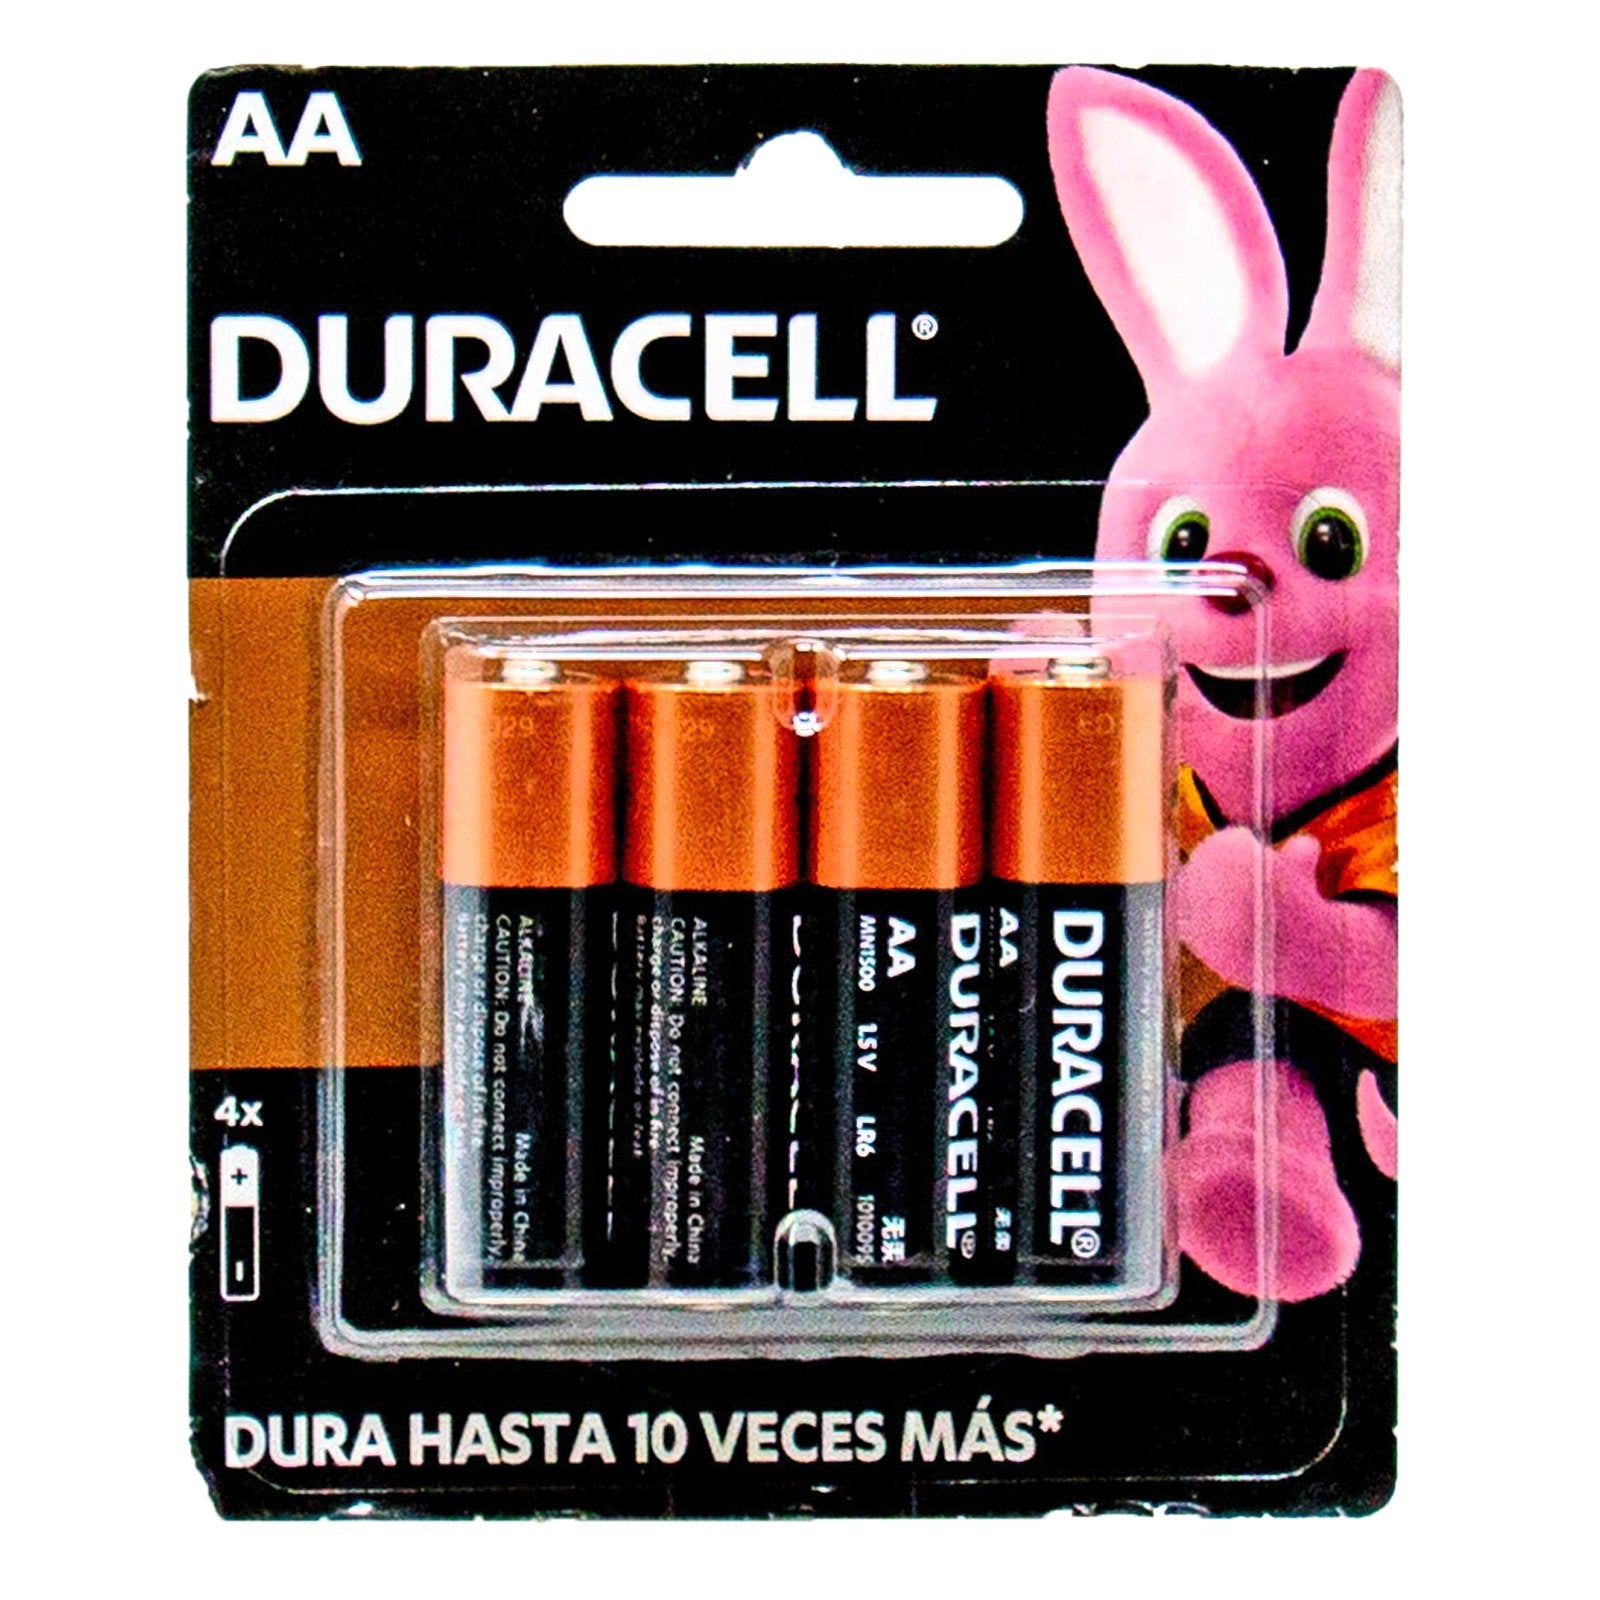 Duracell Batteries AA 4x – California Ranch Market